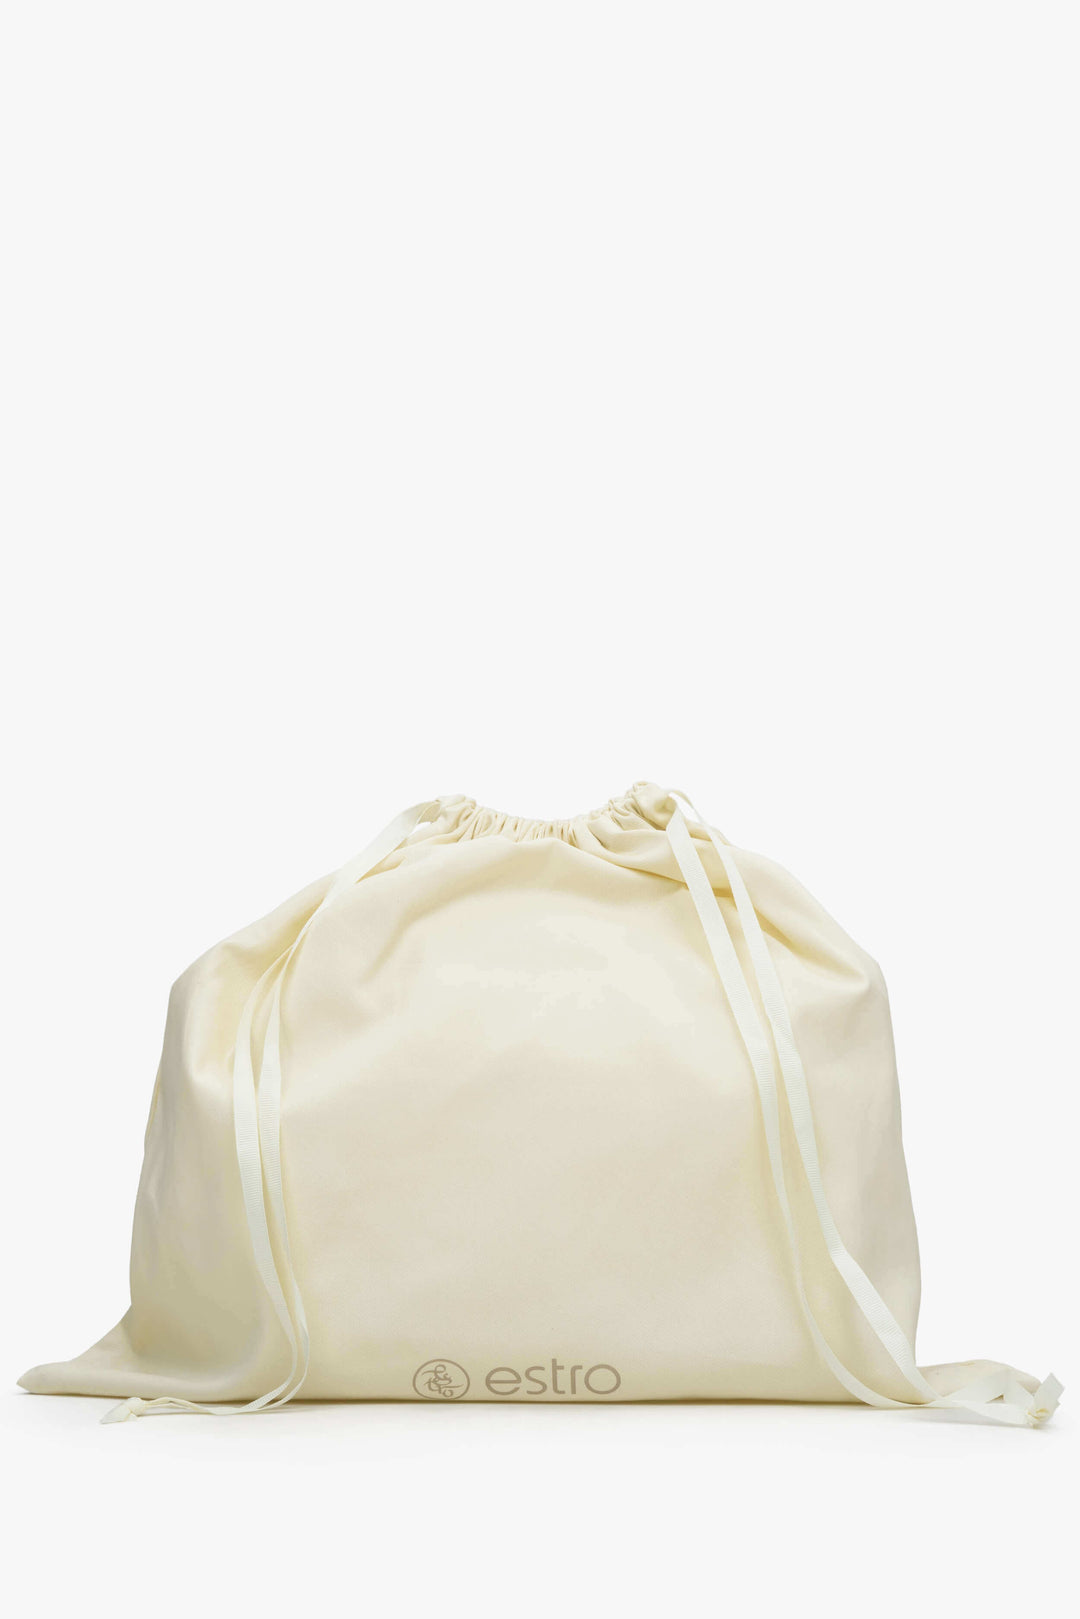 Women's Black Shopper Bag made of Genuine Italian Leather Estro ER00114121